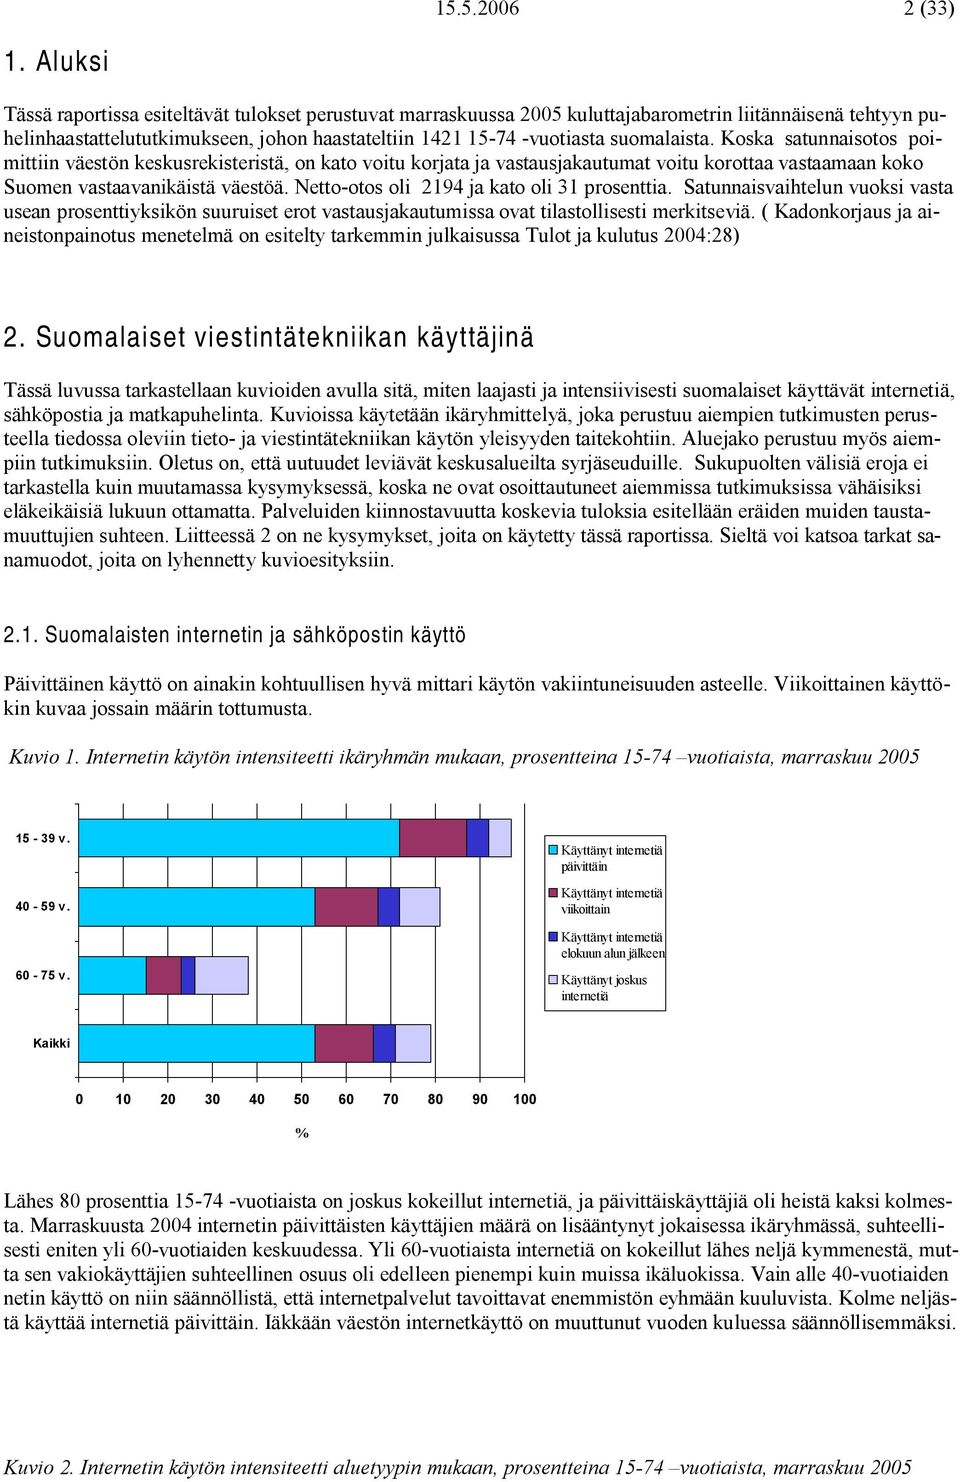 suomalaista. Koska satunnaisotos poimittiin väestön keskusrekisteristä, on kato voitu korjata ja vastausjakautumat voitu korottaa vastaamaan koko Suomen vastaavanikäistä väestöä.